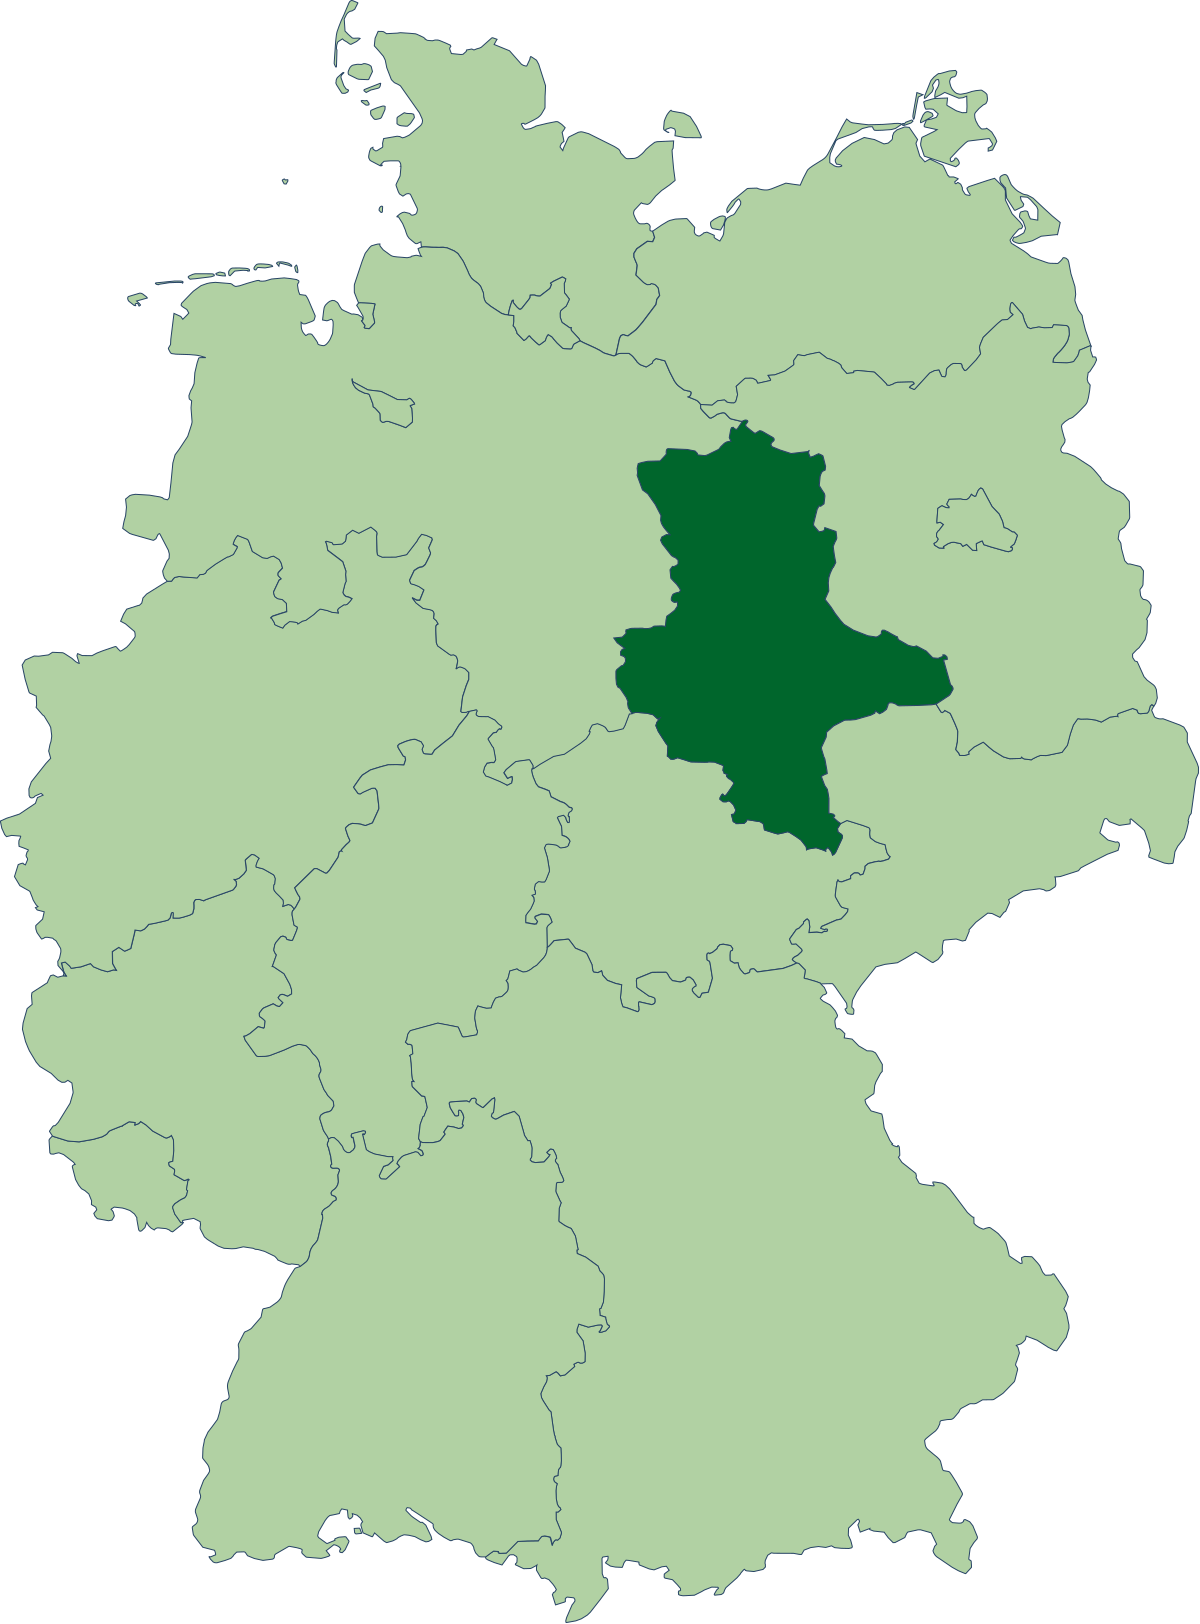 GlГјcksrakete Sachsen Anhalt